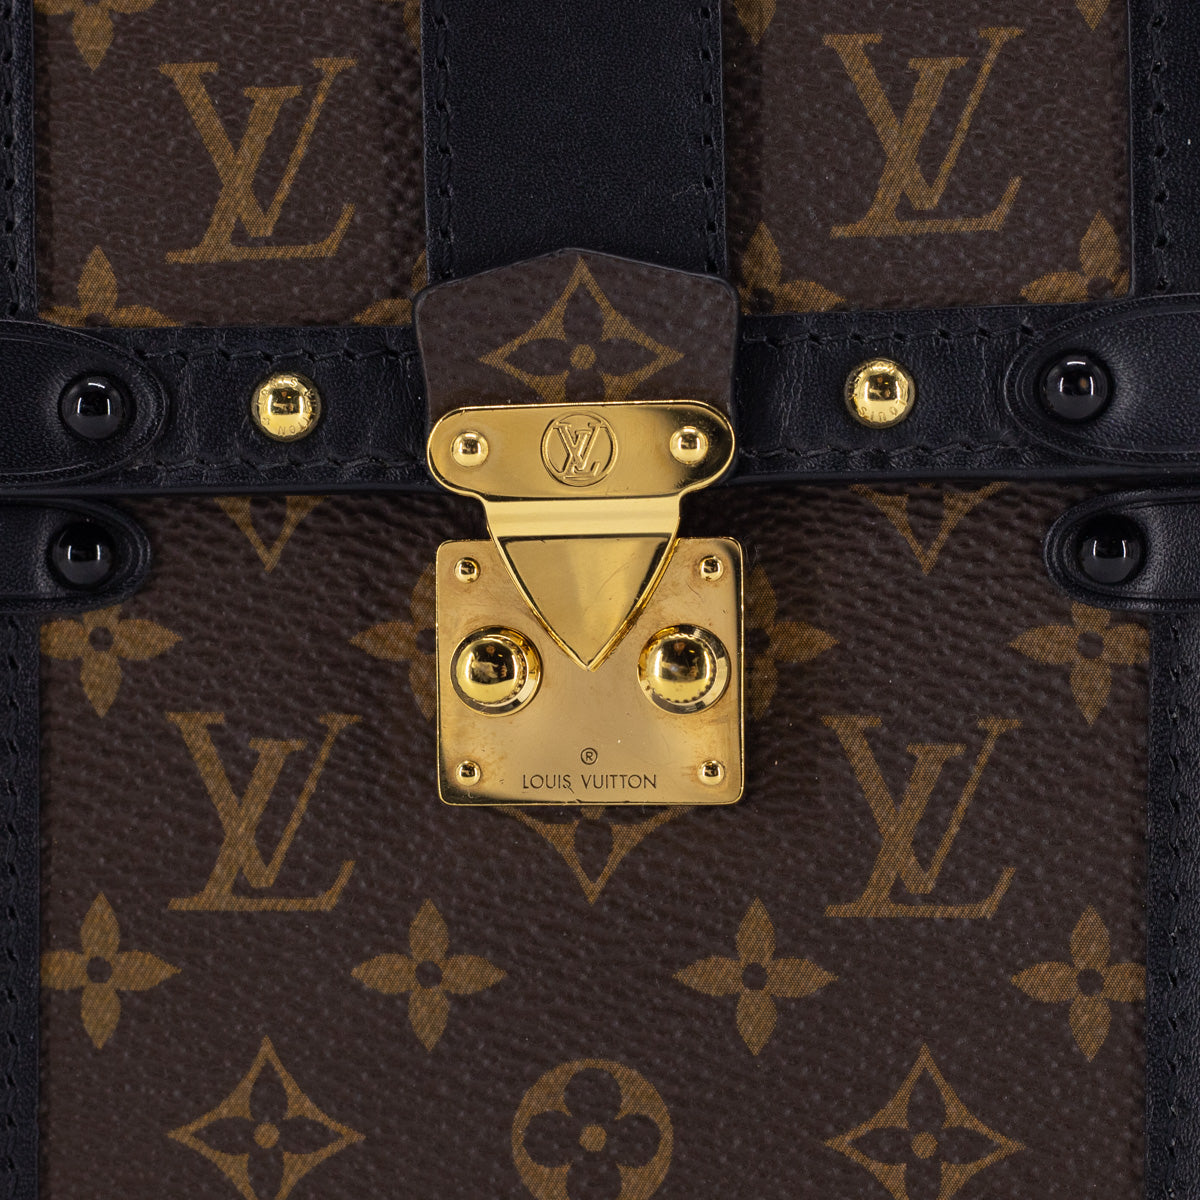 Louis Vuitton Trunk Monogram Clutch Bag - THE PURSE AFFAIR